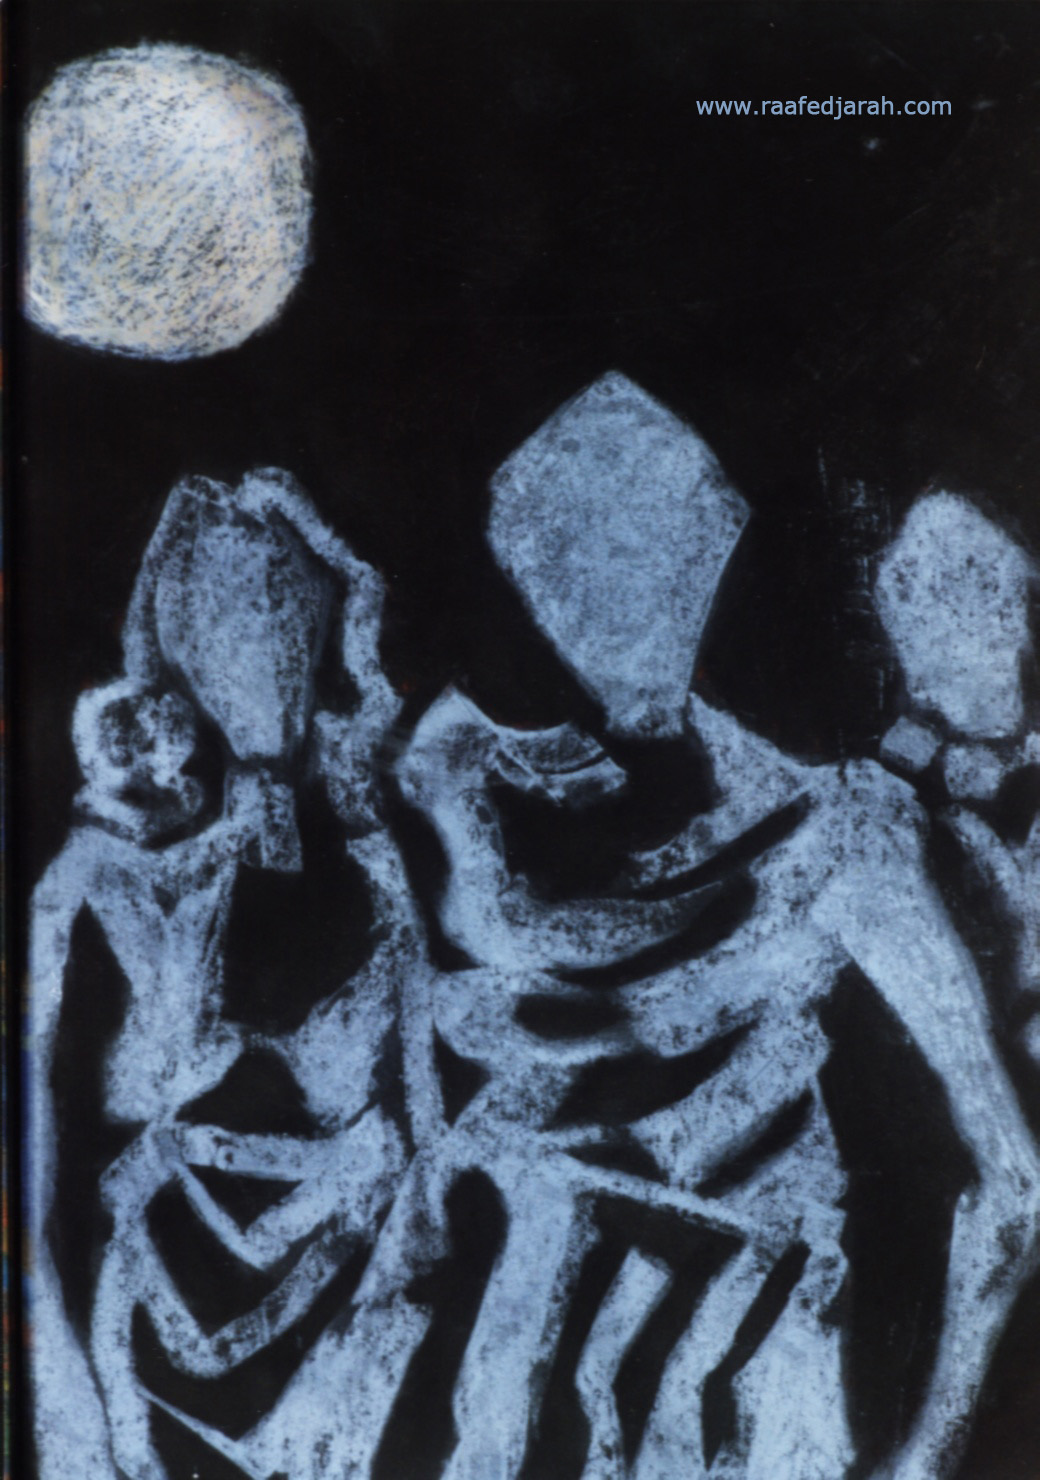 Anfal, chalk on black carton, 1998. Raafed Jarah.